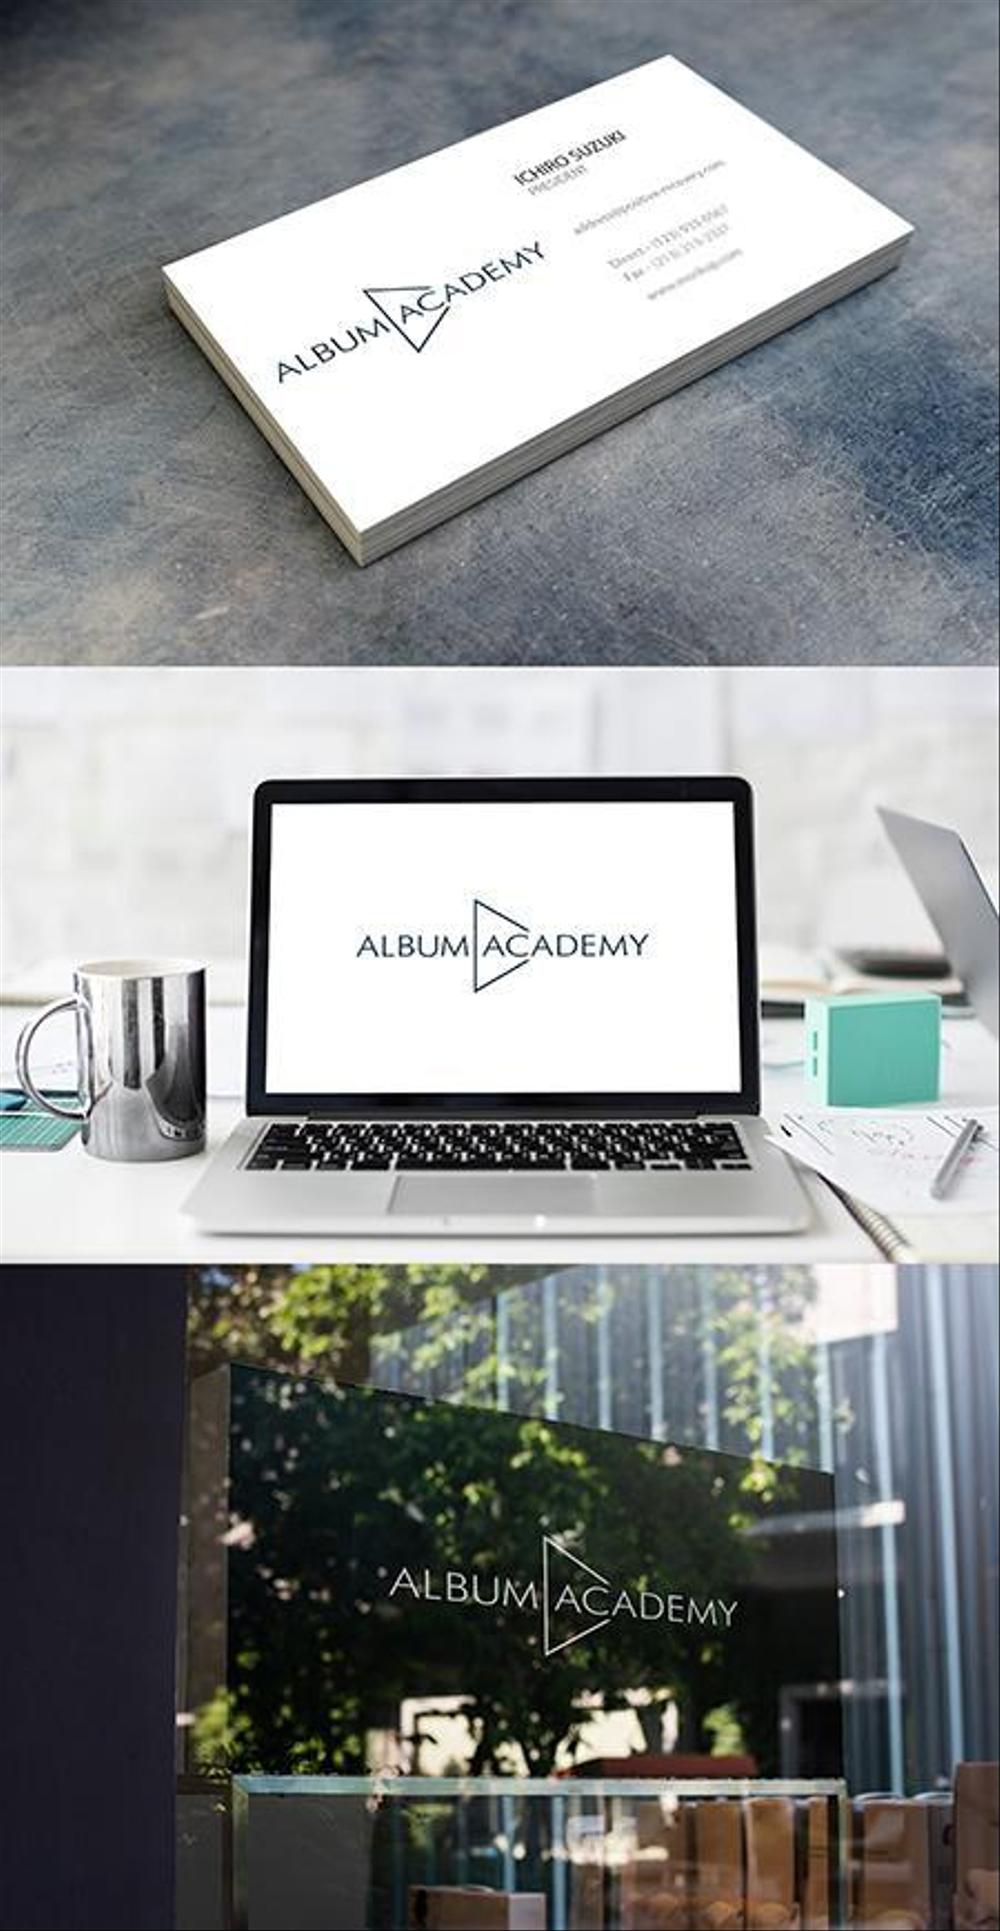 動画学習サービス「ALBUM ACADEMY」のロゴ